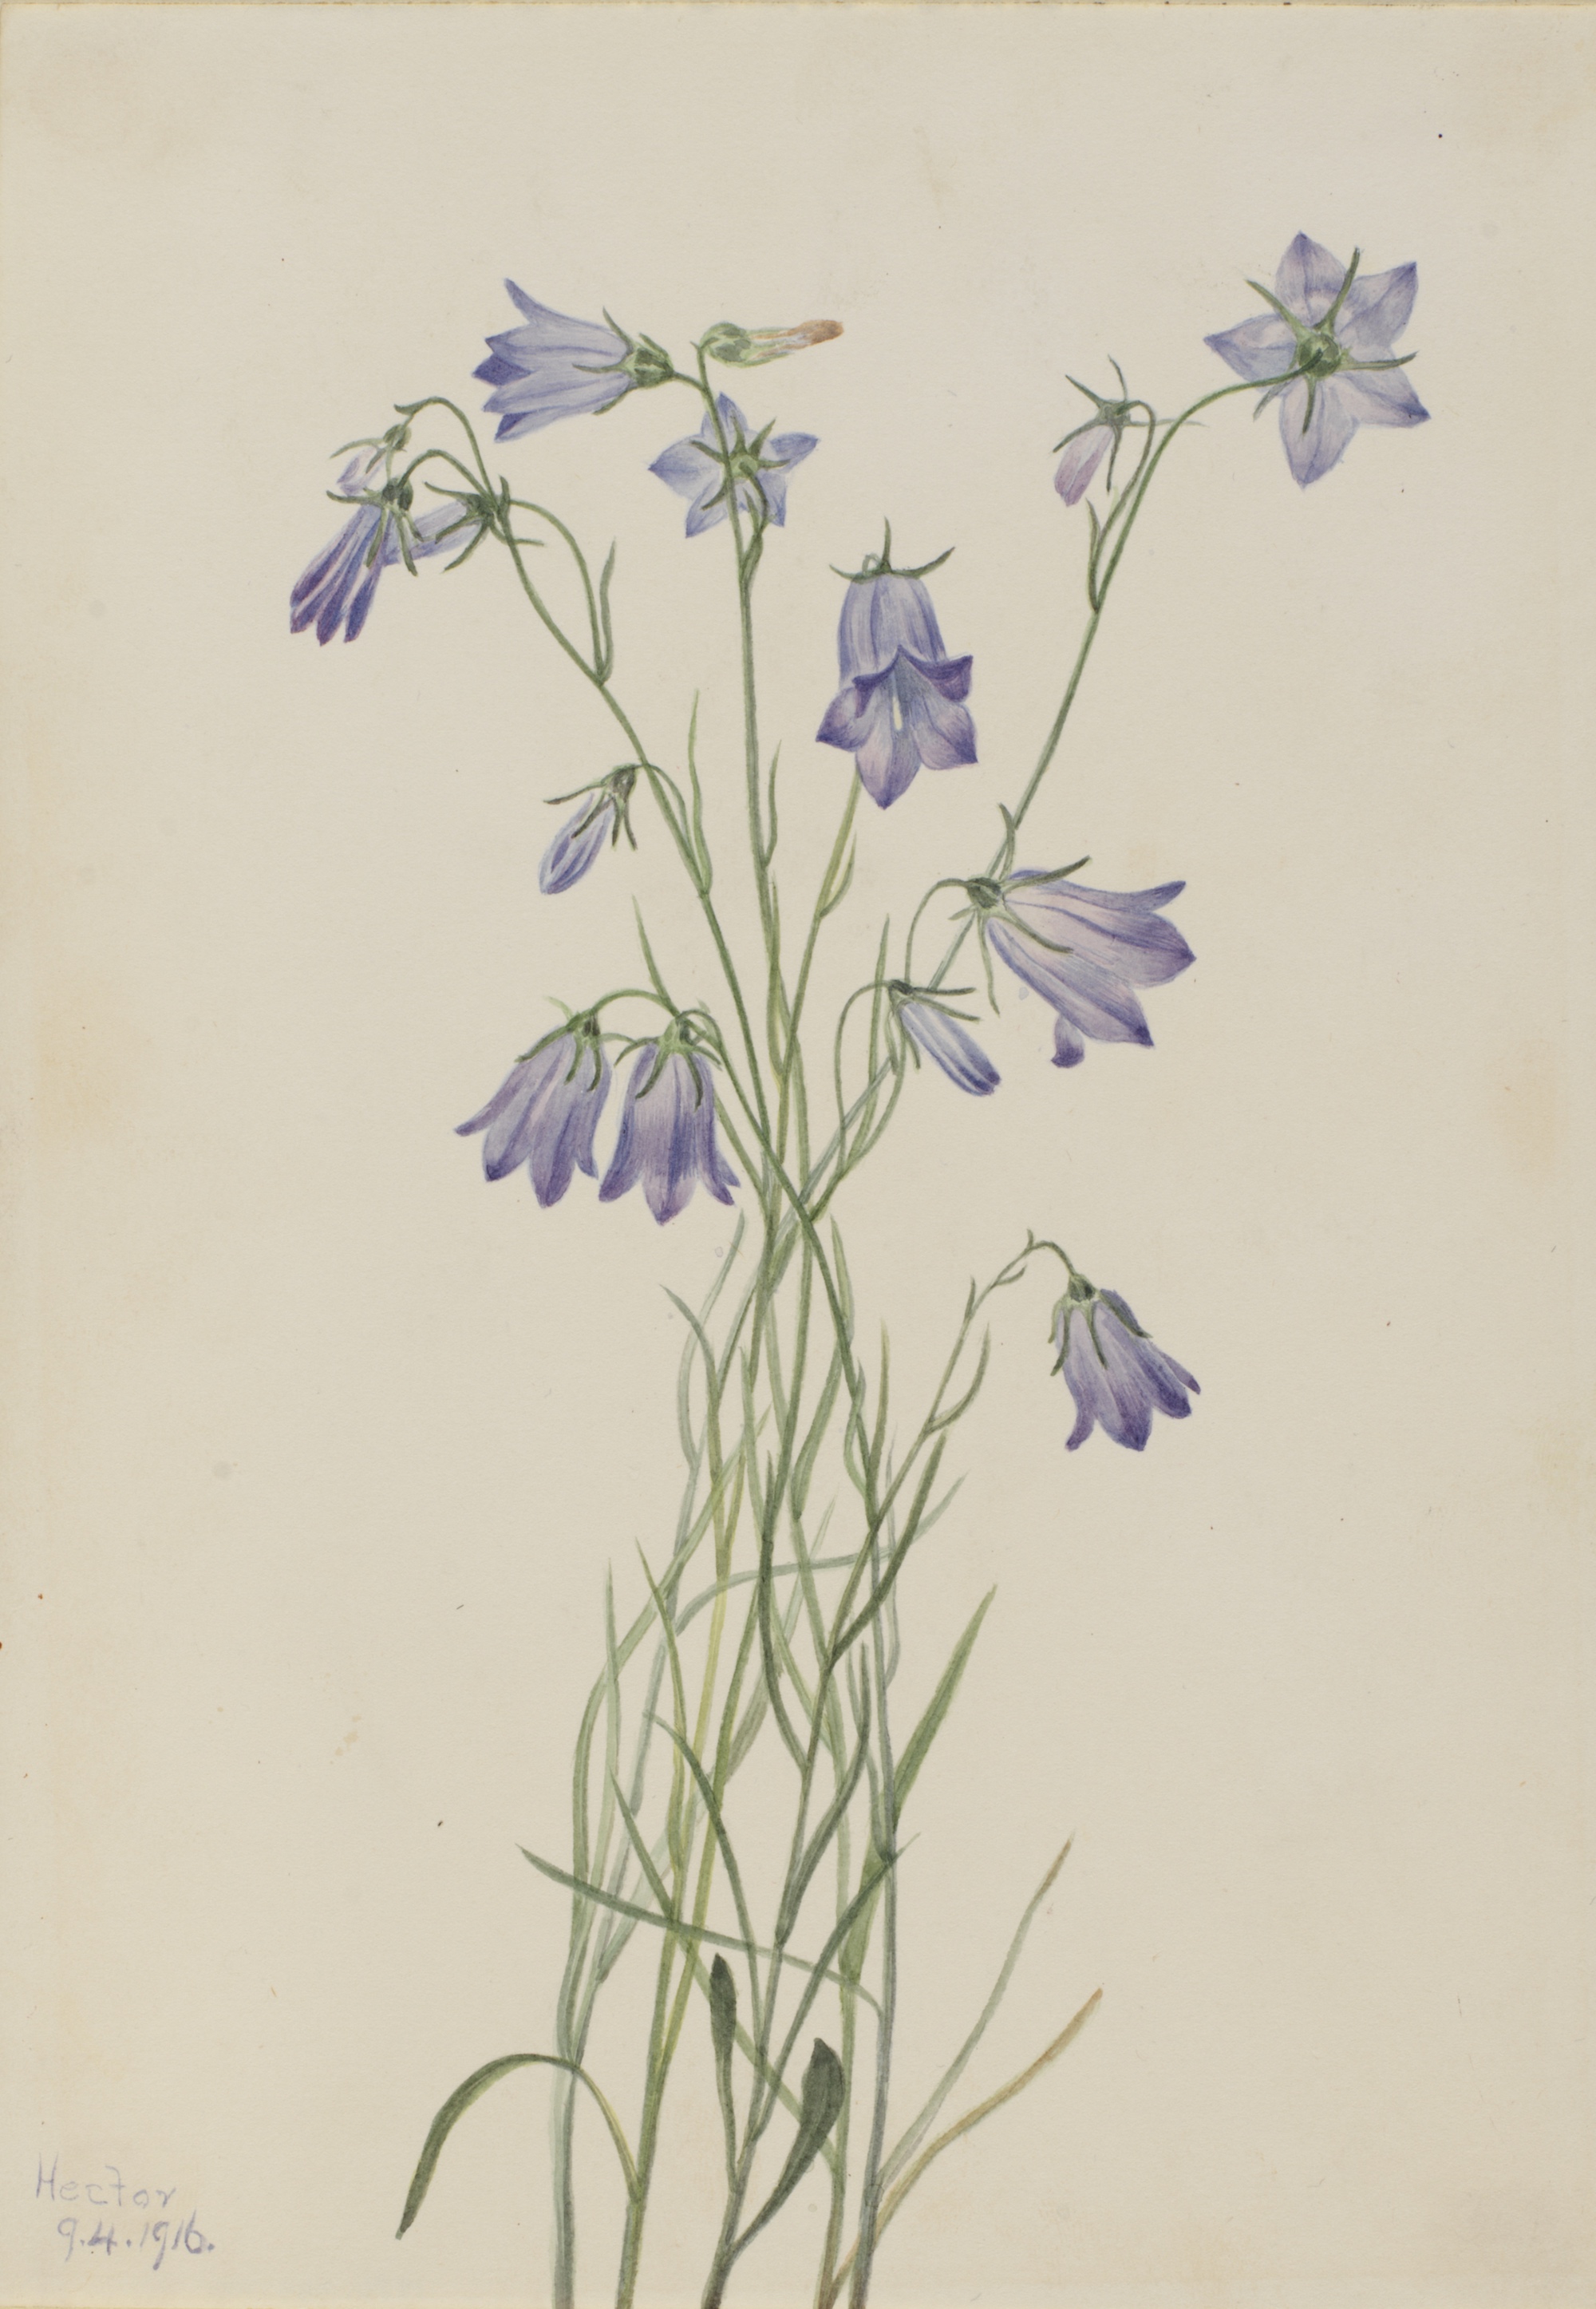 1916 Harebell (Campanula rotundifolia) illustration by Mary Vaux Walcott.